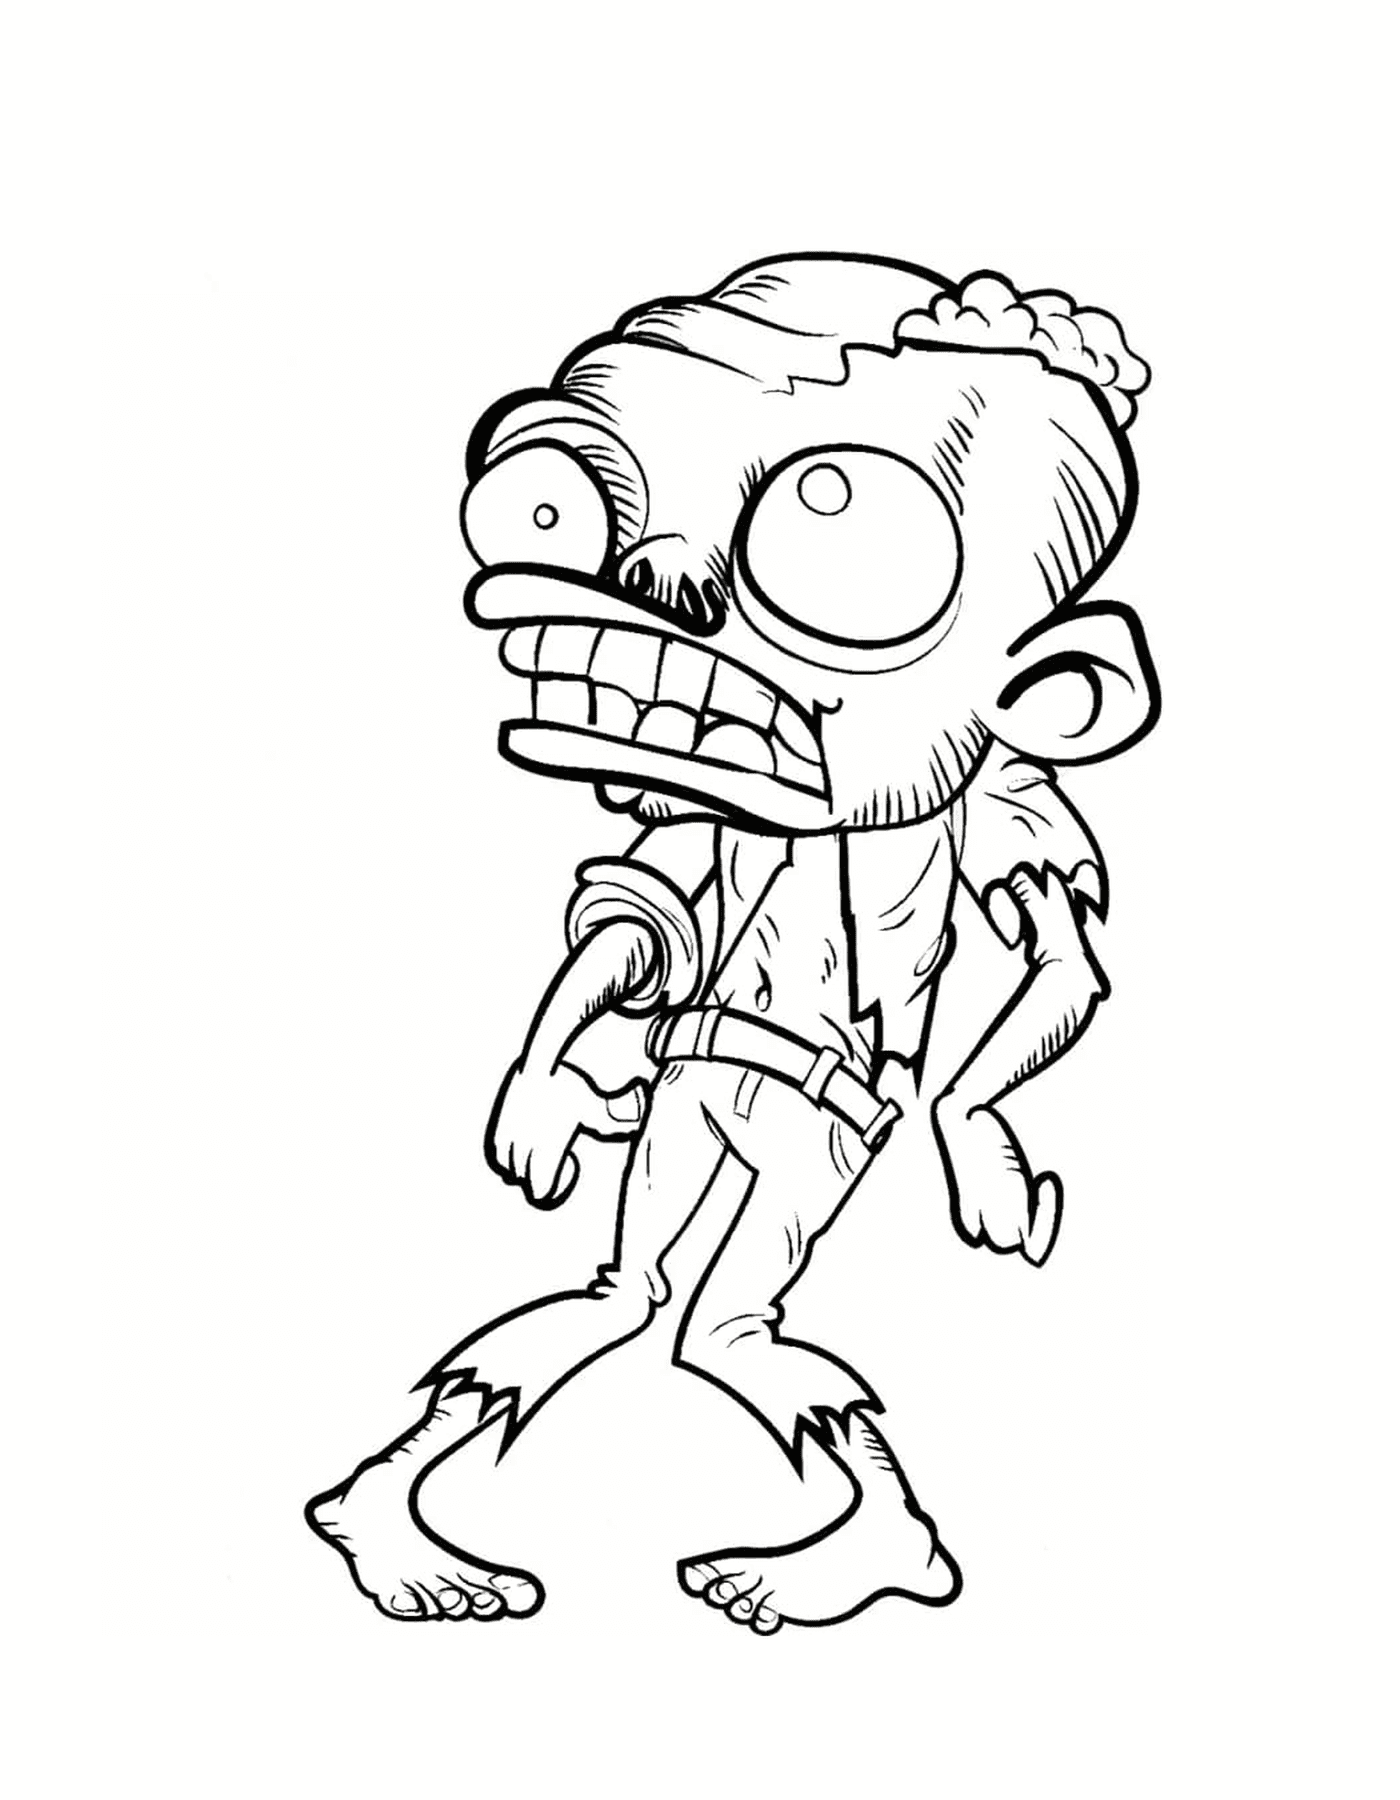  Un zombi realmente feo 